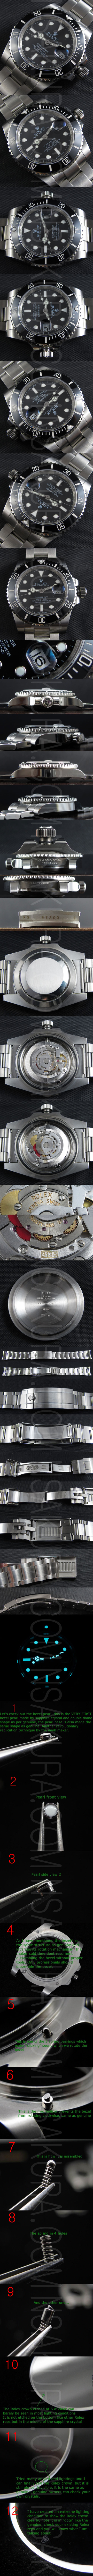 レプリカ時計ロレックス サブマリーナ Ref.116610LV Asian 3135搭載 ハイエンドモデル - ウインドウを閉じる